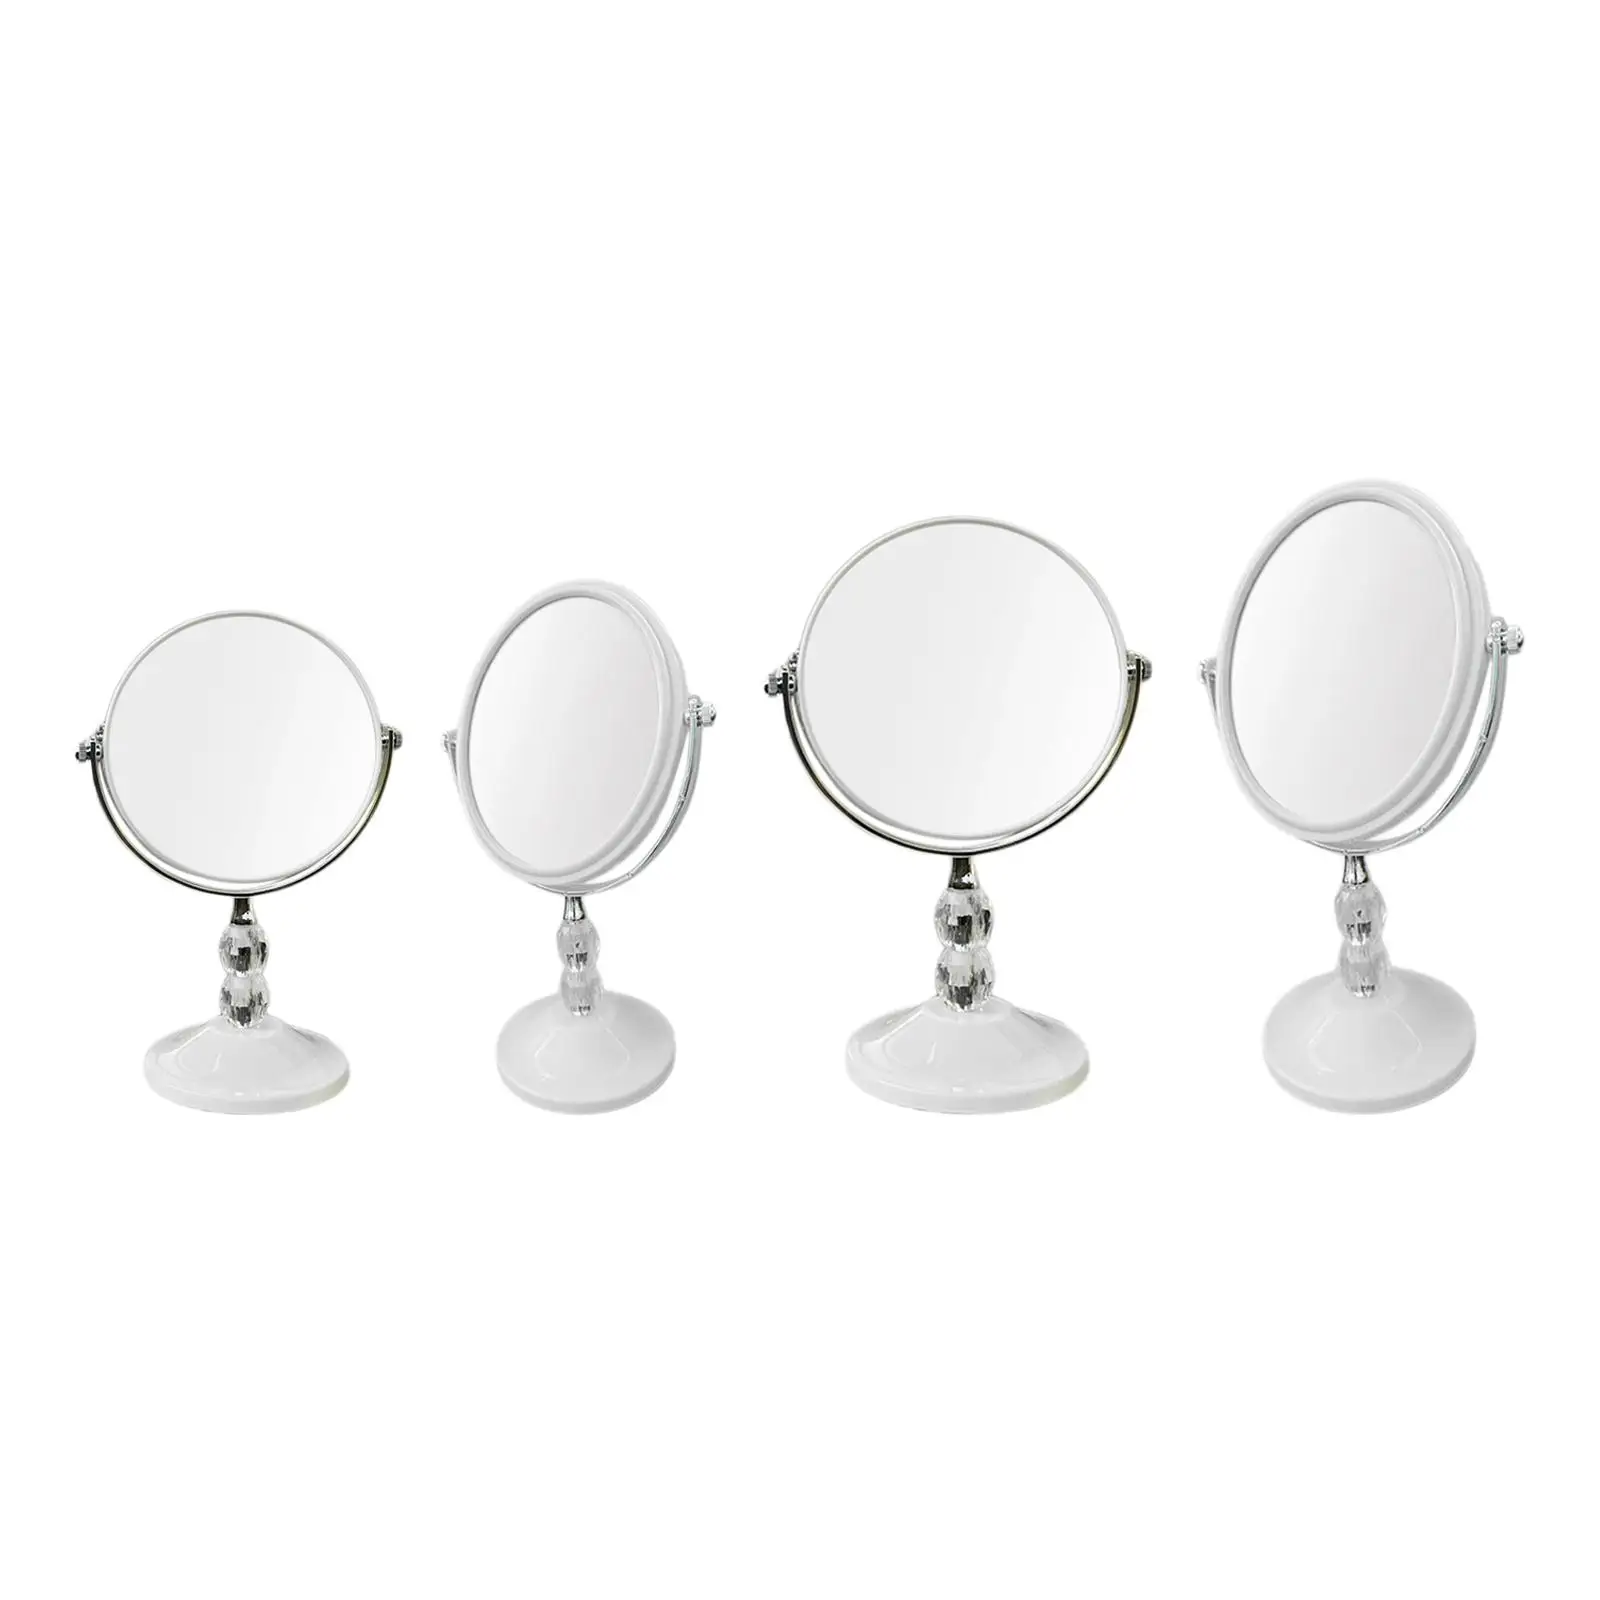 Туалетное зеркало Туалетное зеркало для ванной комнаты с орнаментом на подставке Настольное зеркало Персональное зеркало для прихожих Комоды Прихожая Женщины Мужчины Изображение 0